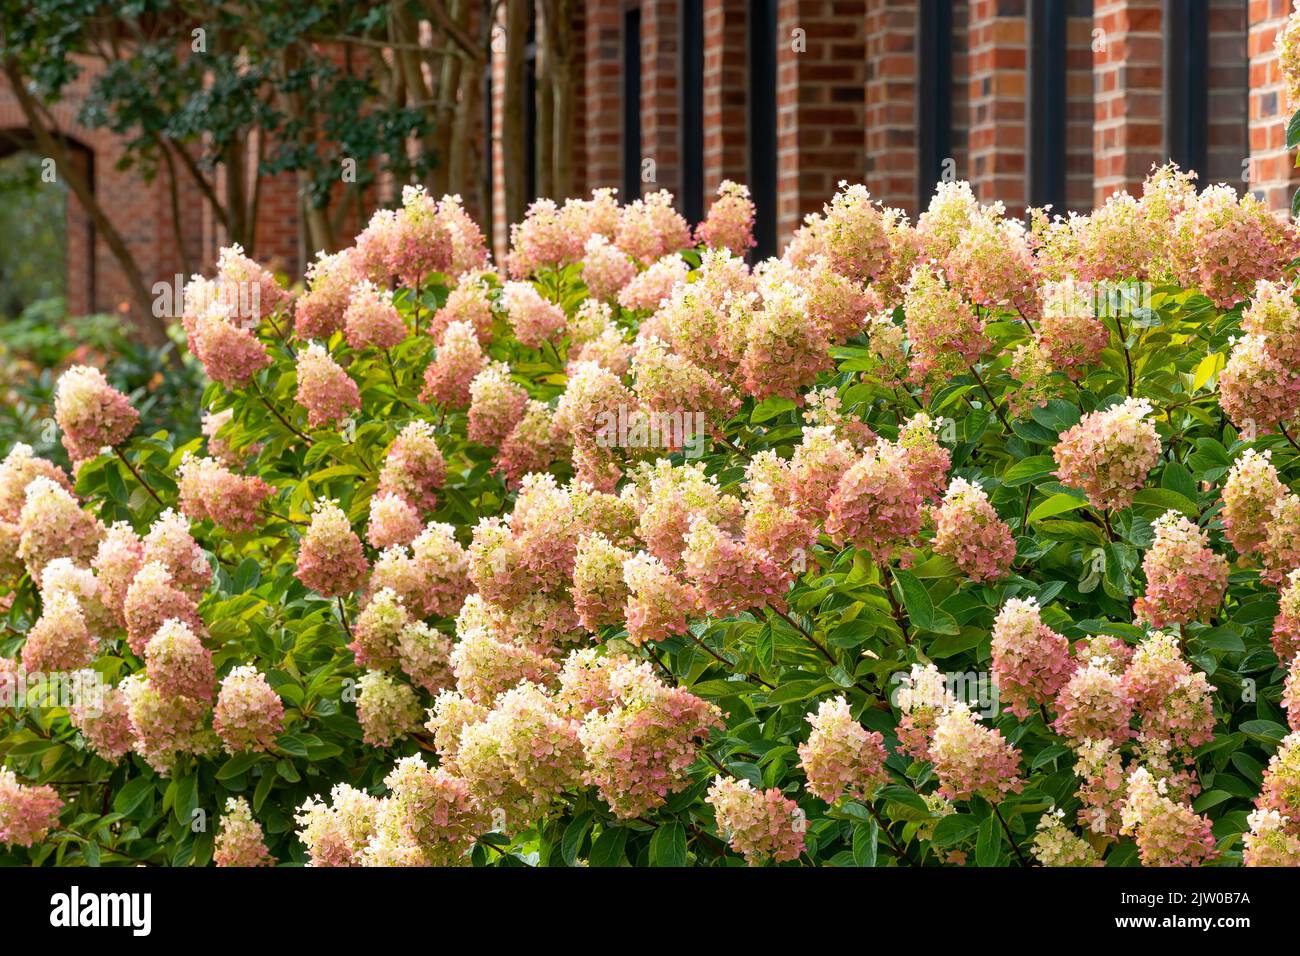 Stunning bi-colored limelight Prime Hydrangea shrub in full bloom. Stock Photo